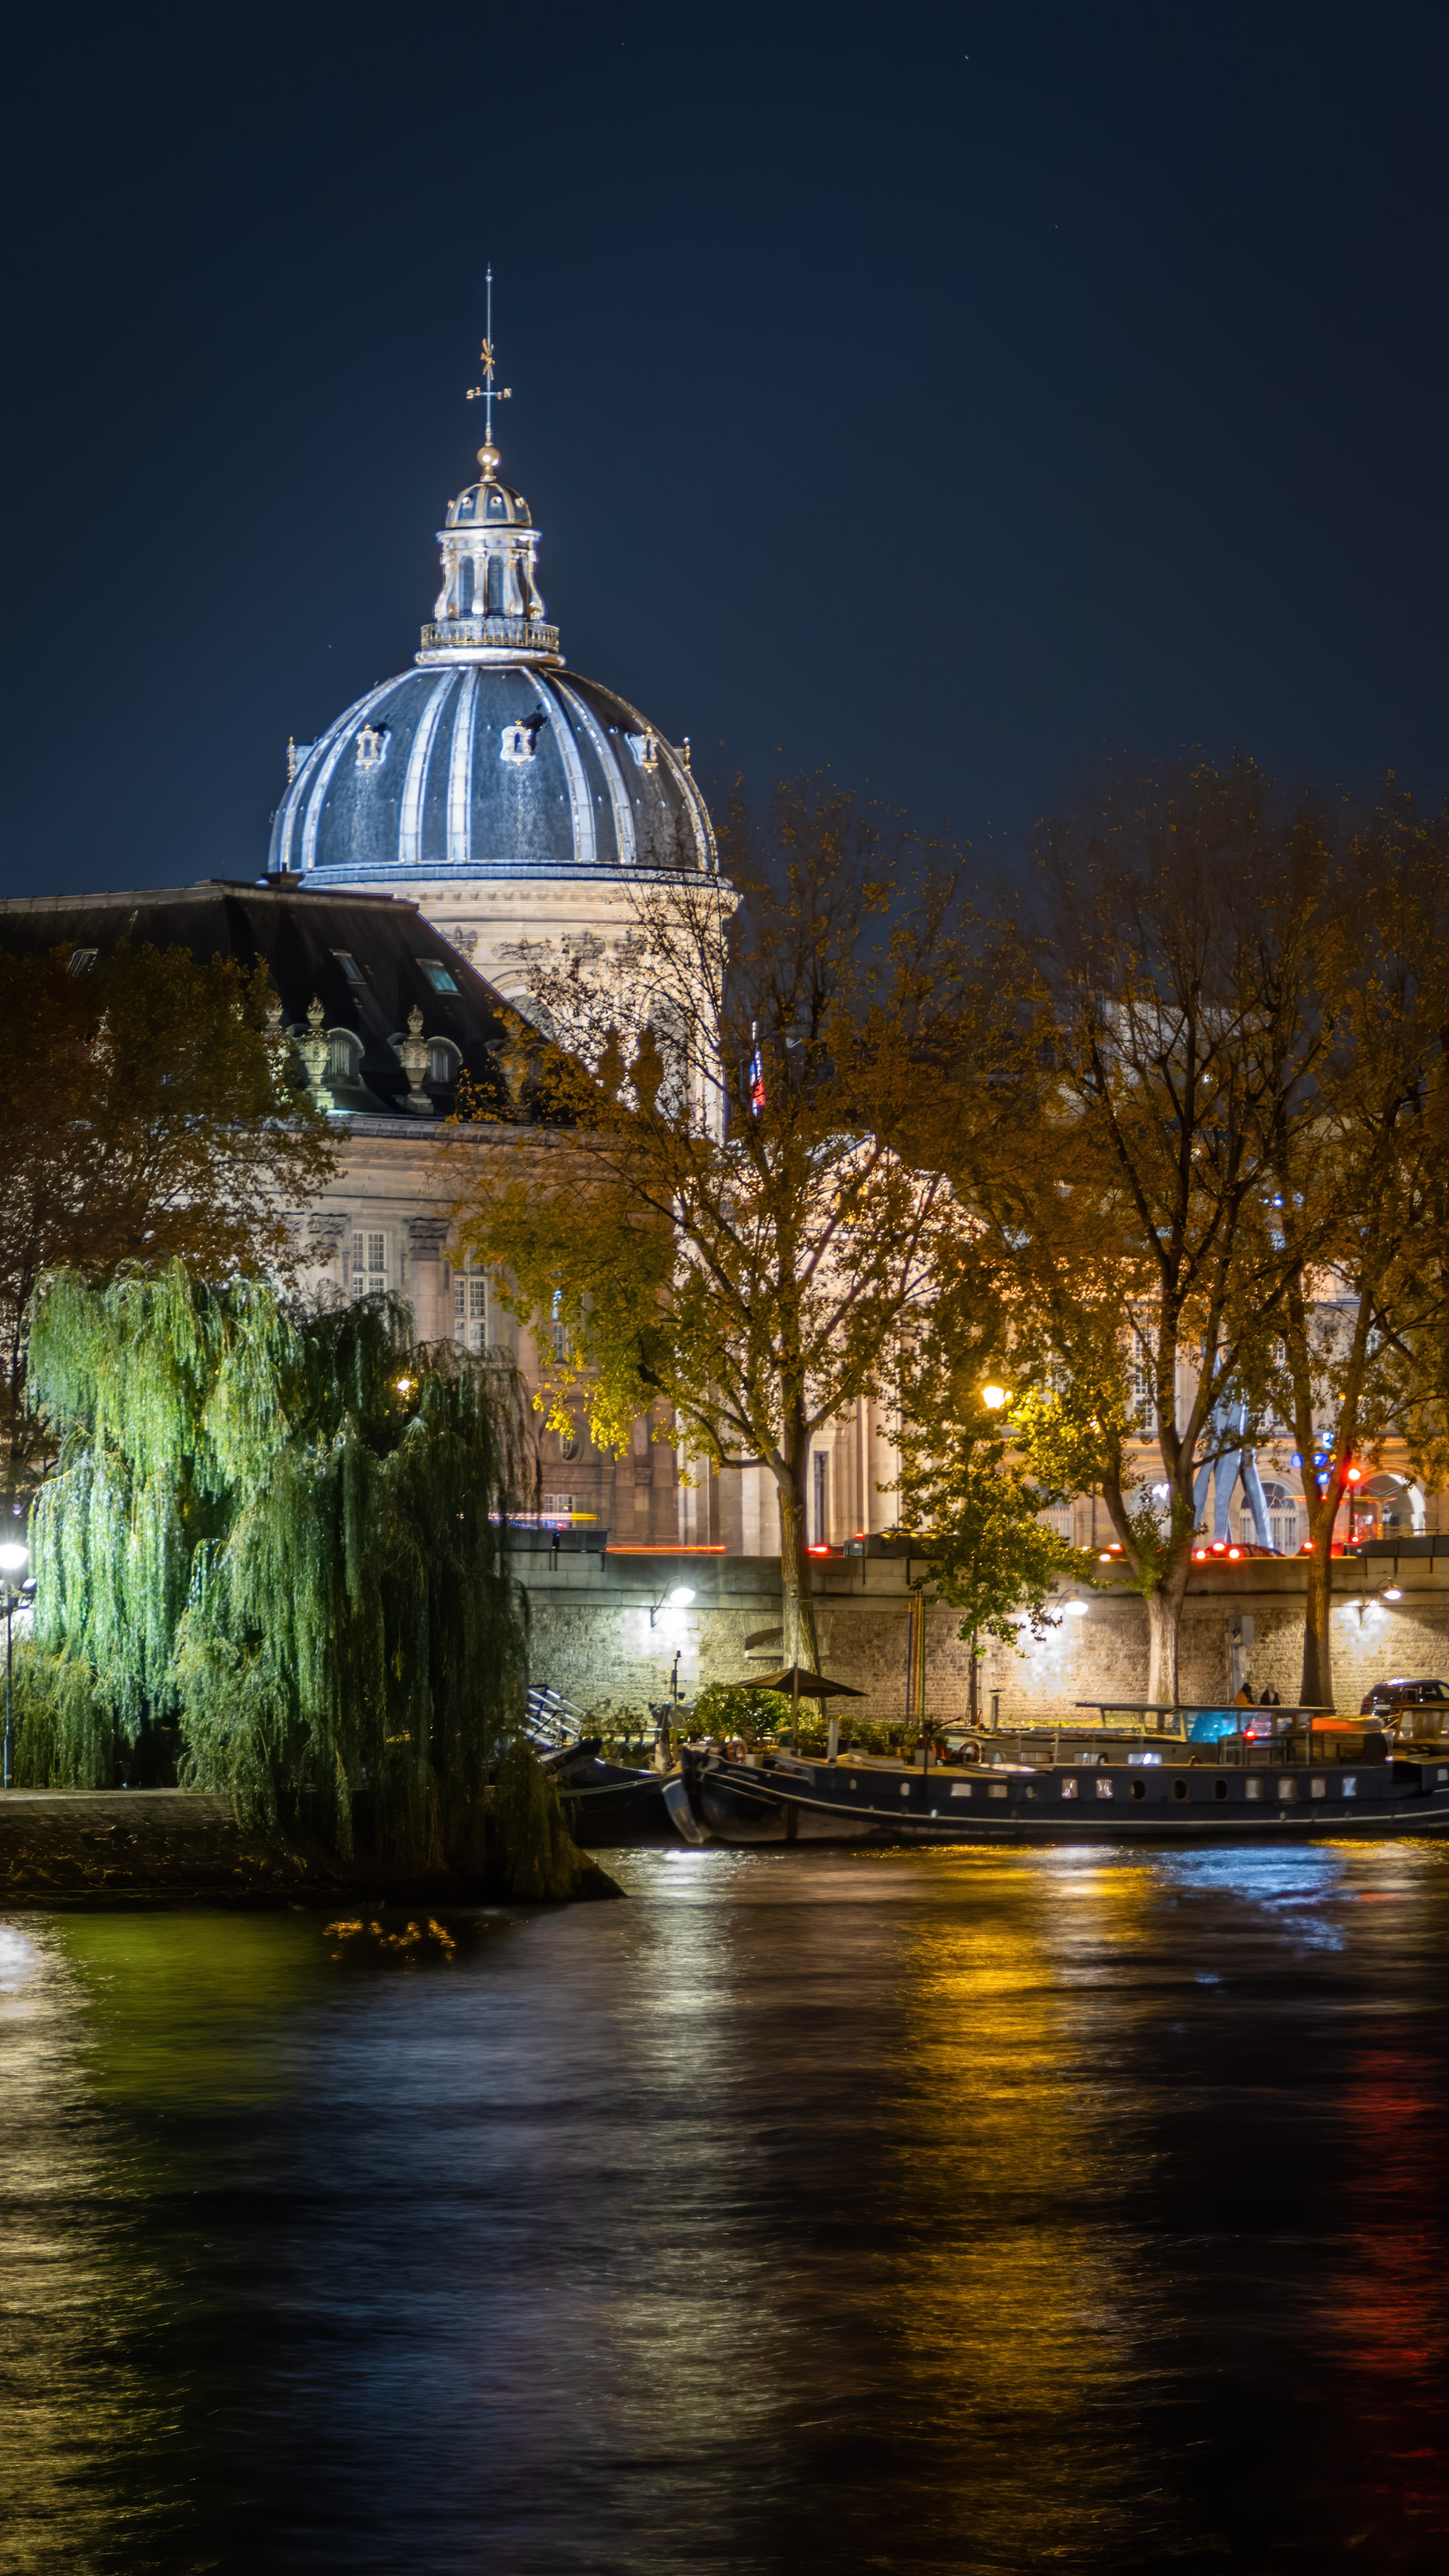 Capturez l'essence de la Ville de l'Amour sur votre iPhone avec cet fond d'écran romantique de la ville de Paris présentant une rue pittoresque bordée de cafés charmants et de bâtiments colorés.